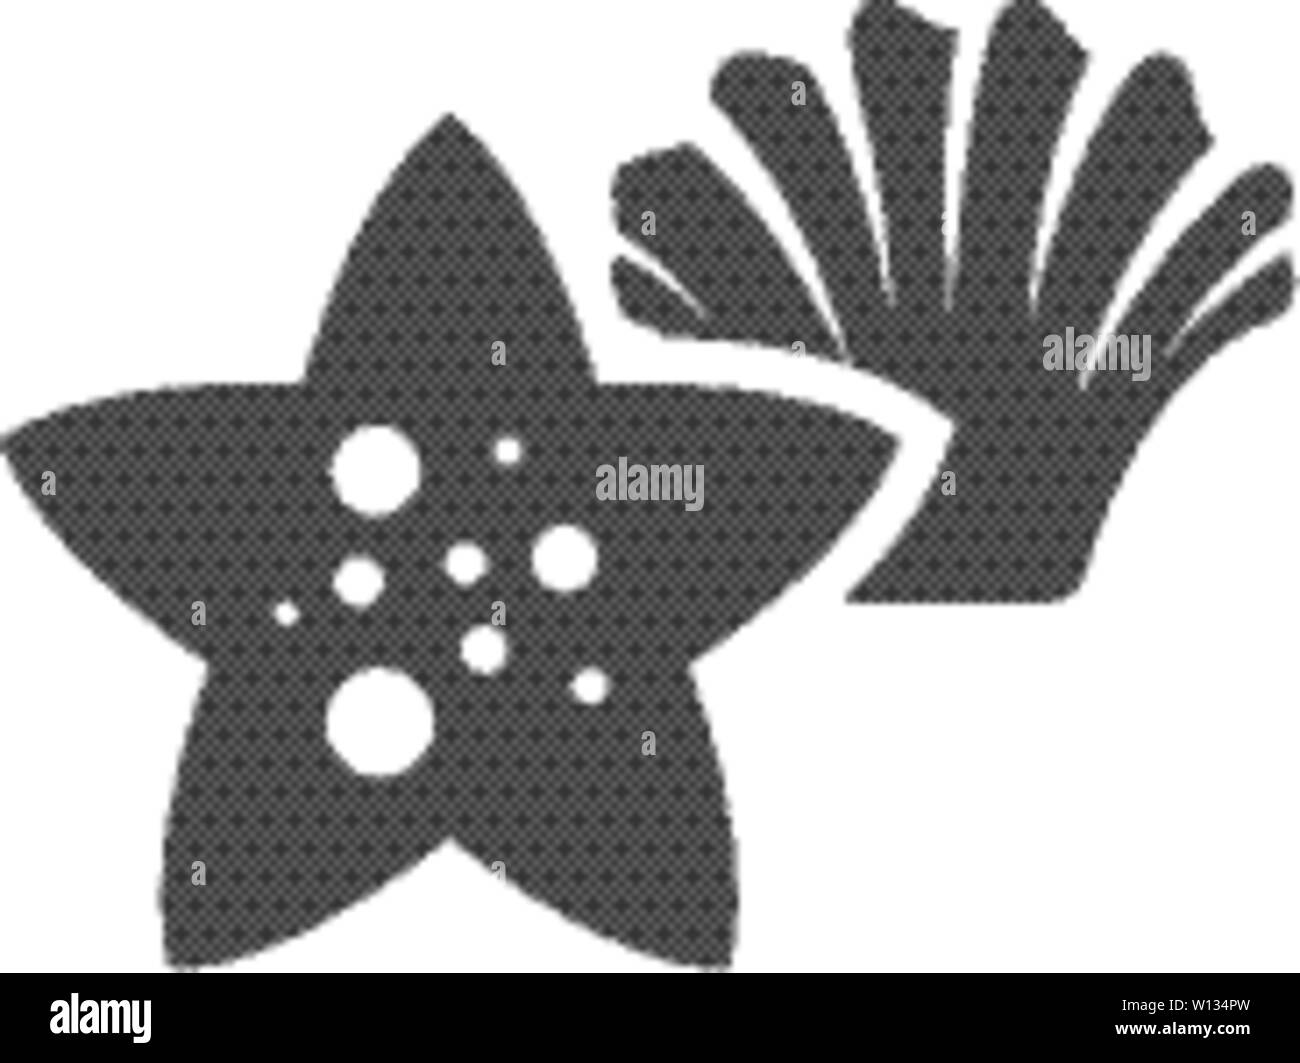 Star fisch Symbol in Schwarz und Weiß Grau einfarbig. Meer tierische Kreatur niedlich Stock Vektor